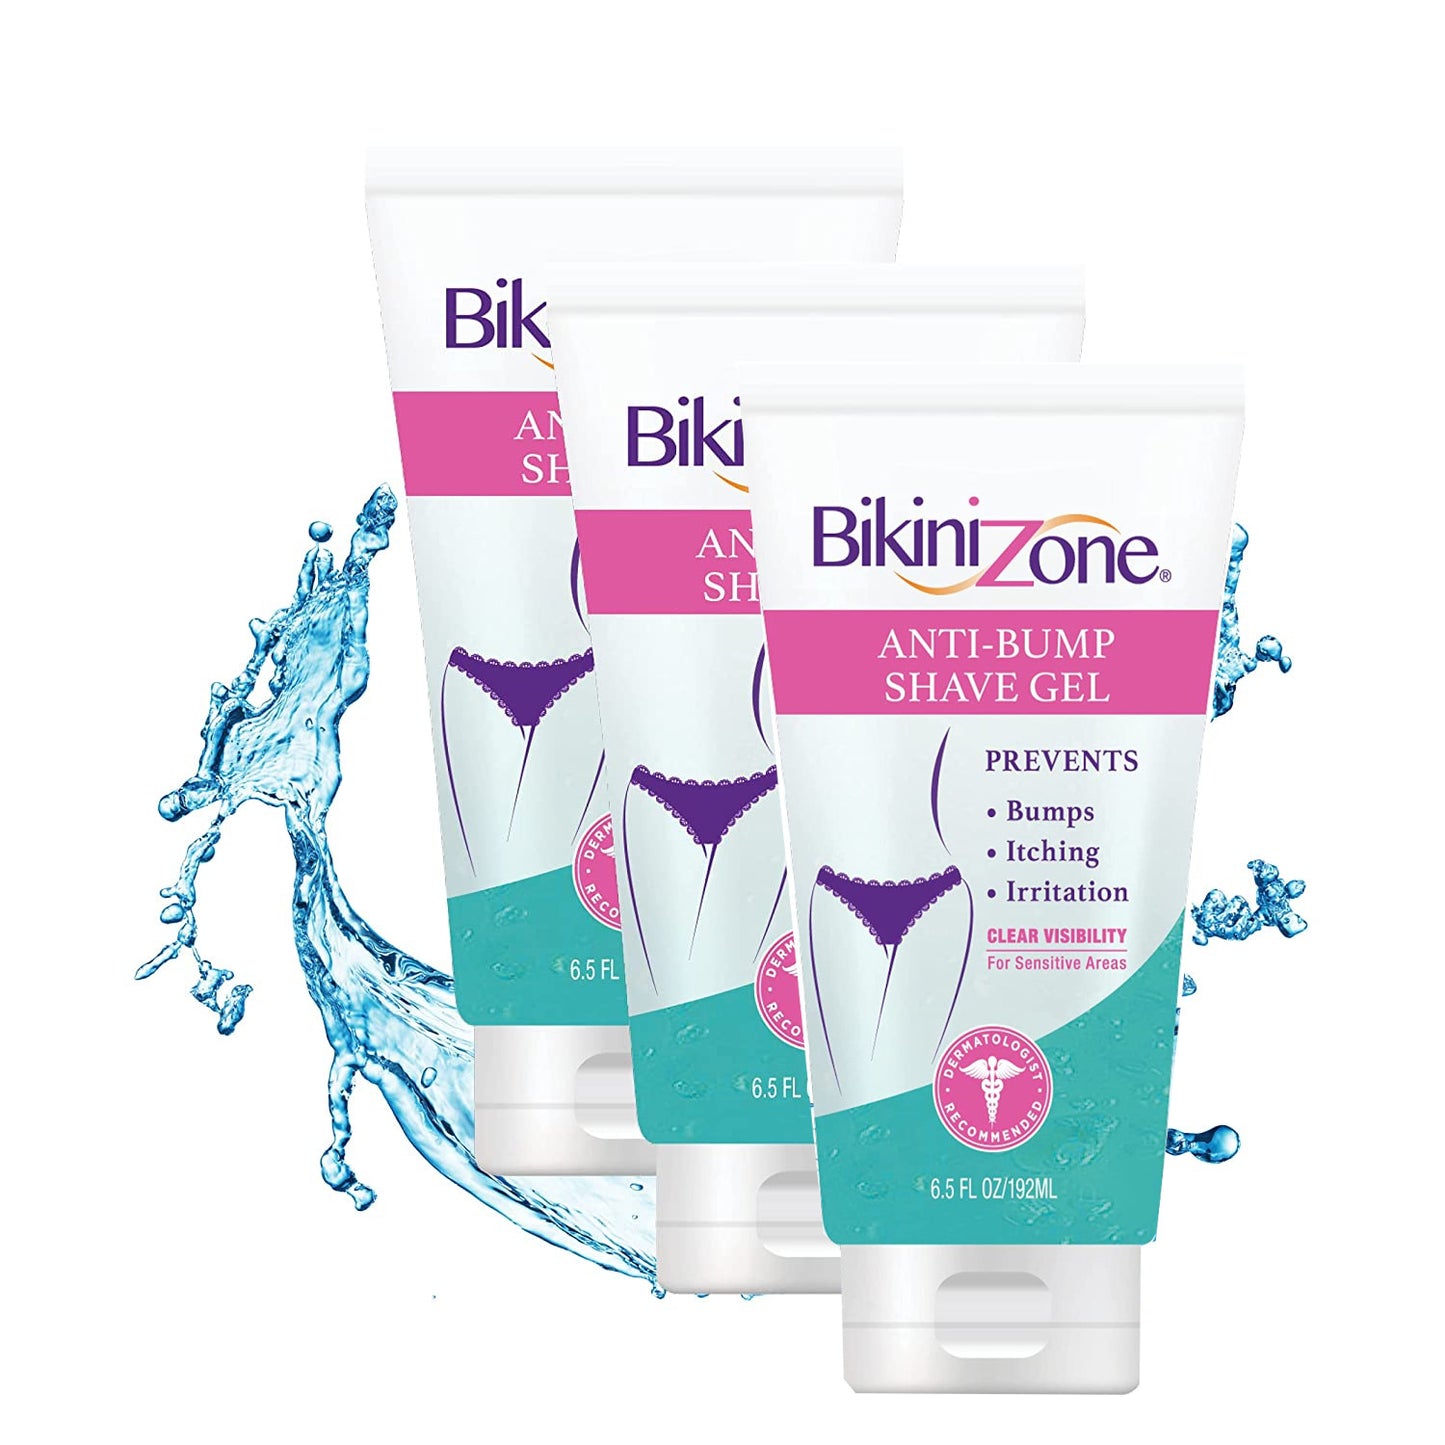 Bikini Zone Anti-Bumps Shave Gel - NEW 6.5oz size